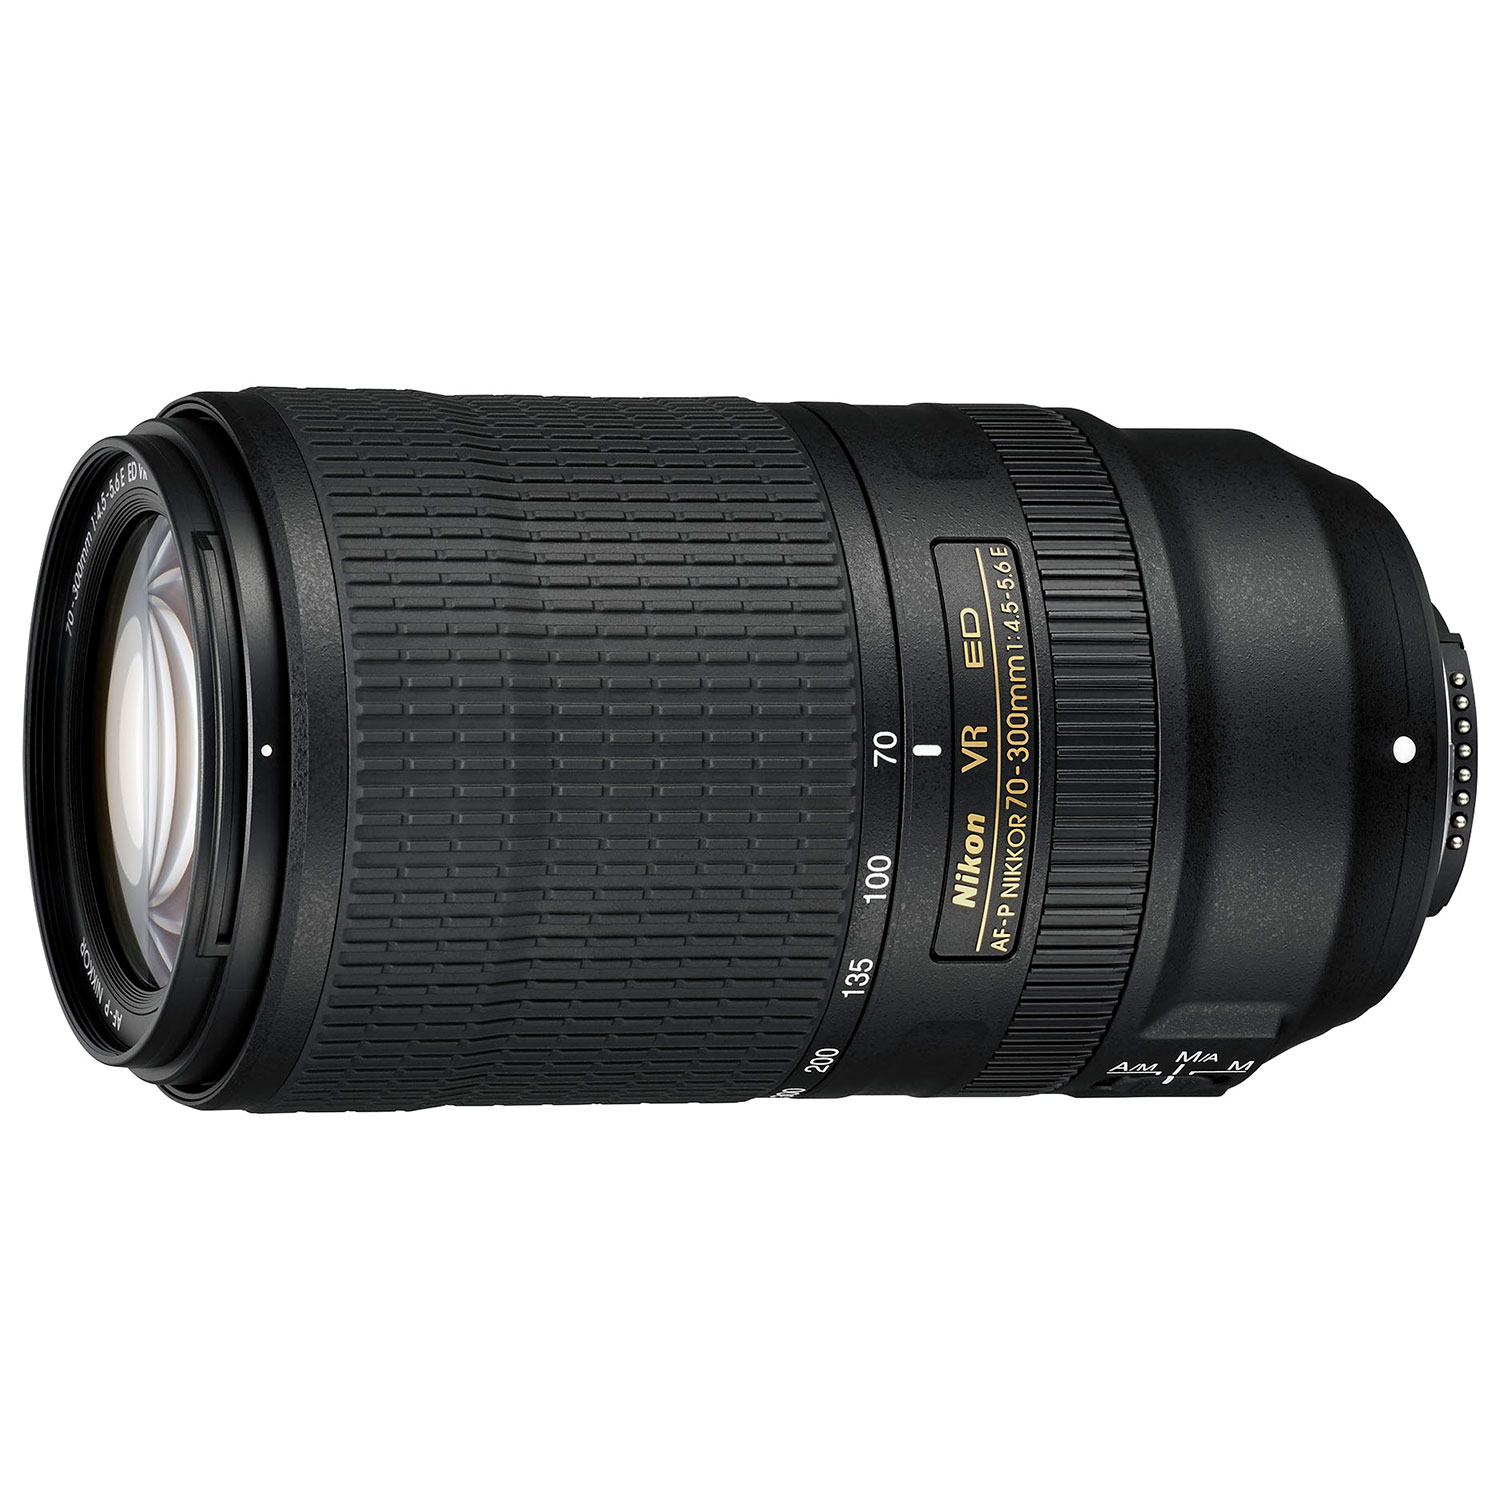 Nikon NIKKOR 70-300mm f/4.5-5.6 VR AF-P Lens - Black